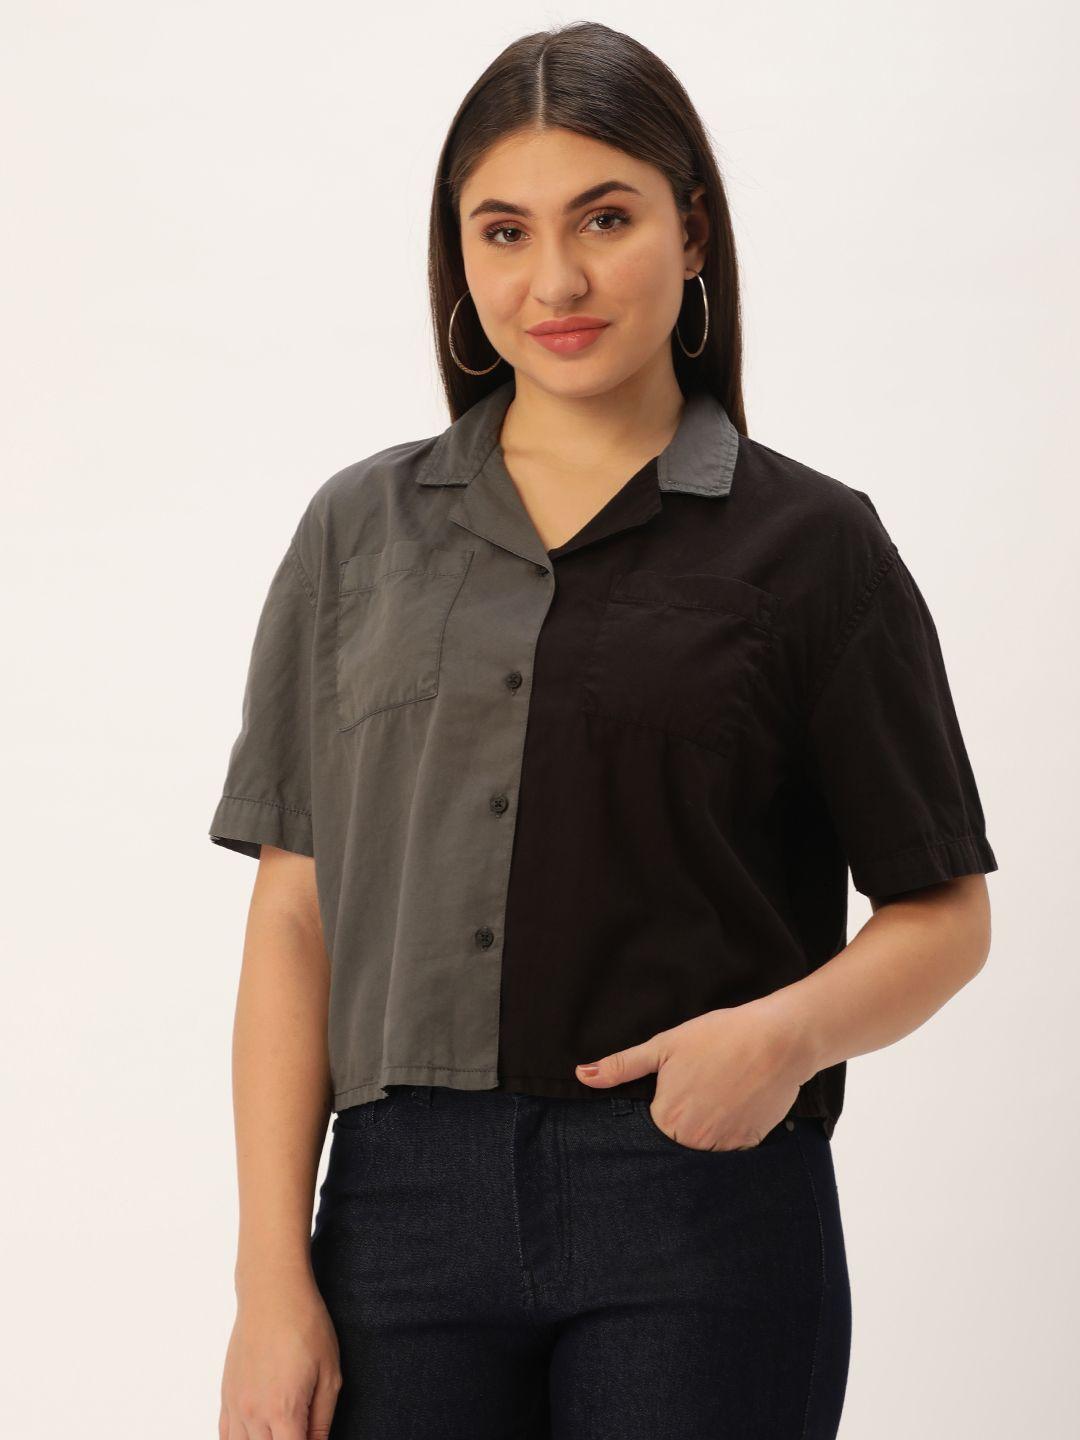 bene kleed women boxy opaque colourblocked cotton casual shirt